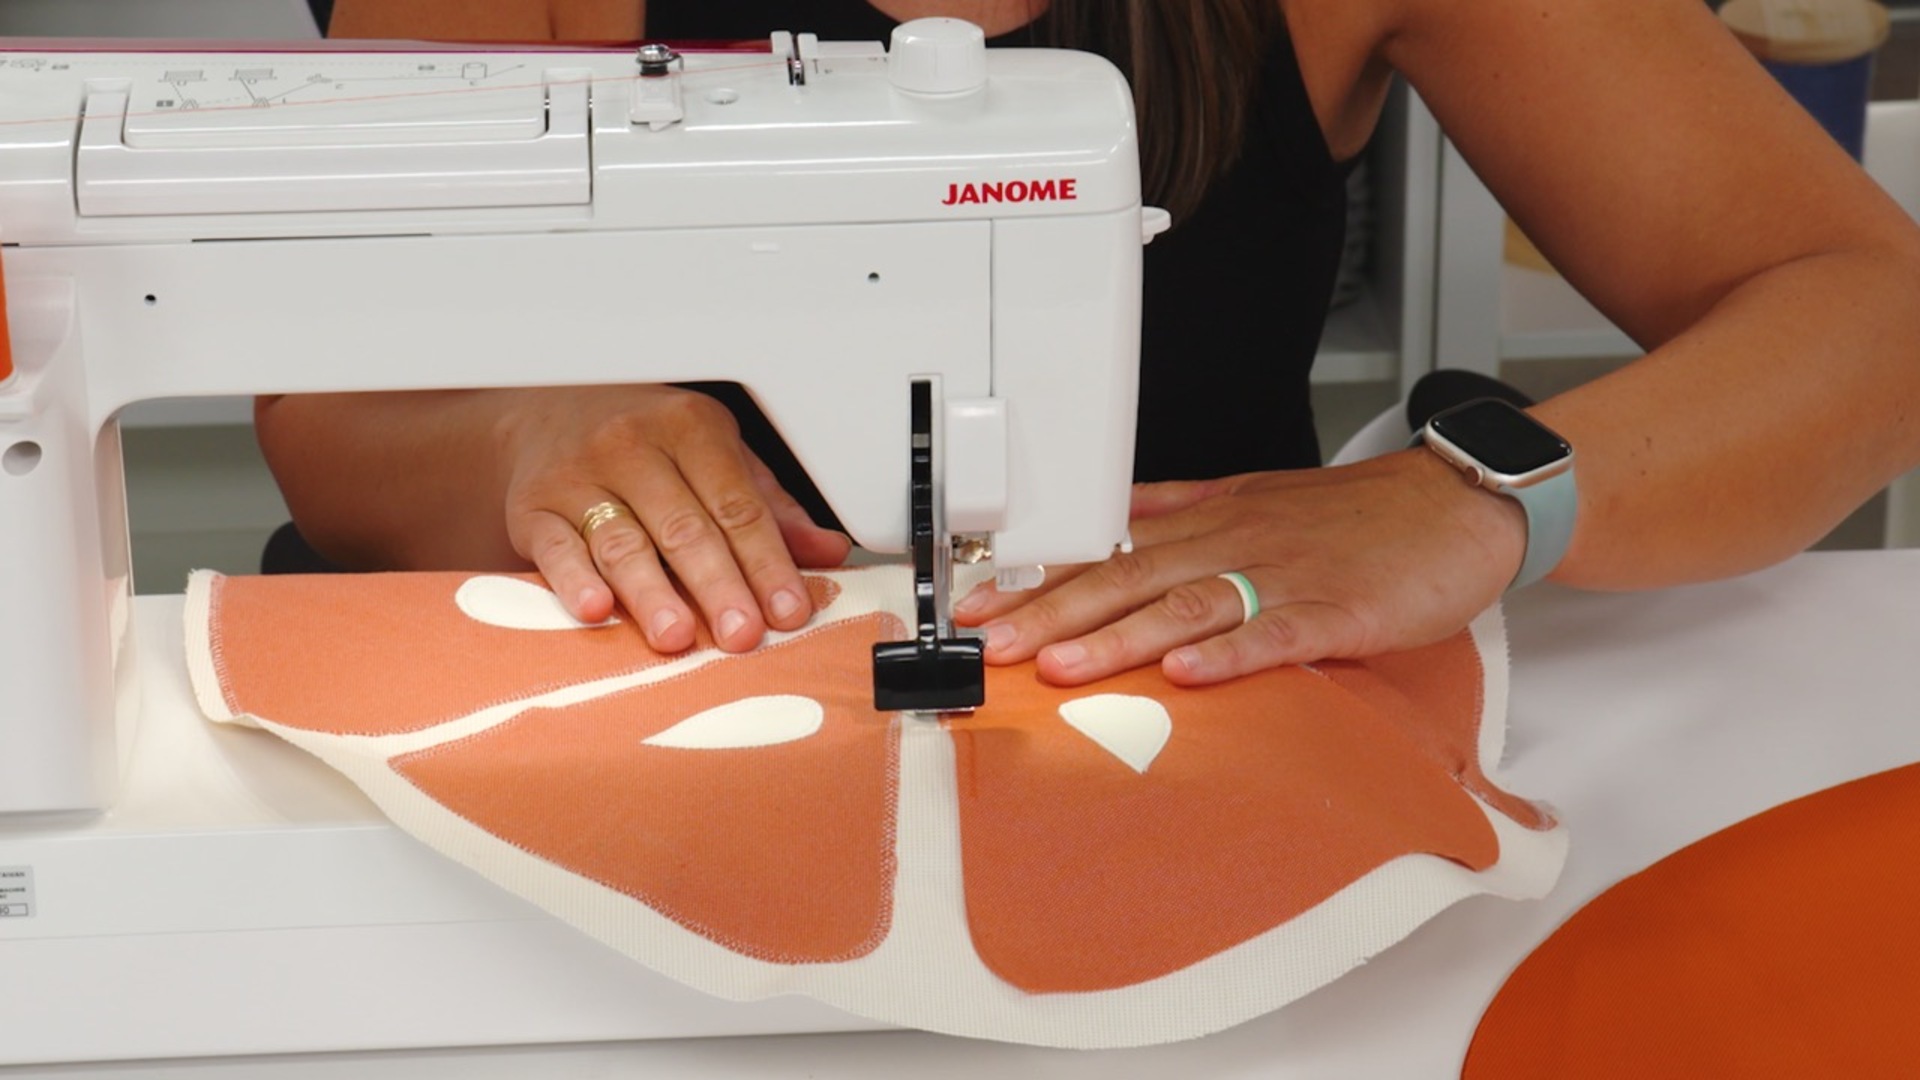 Janome MC6650 Sewing Machine